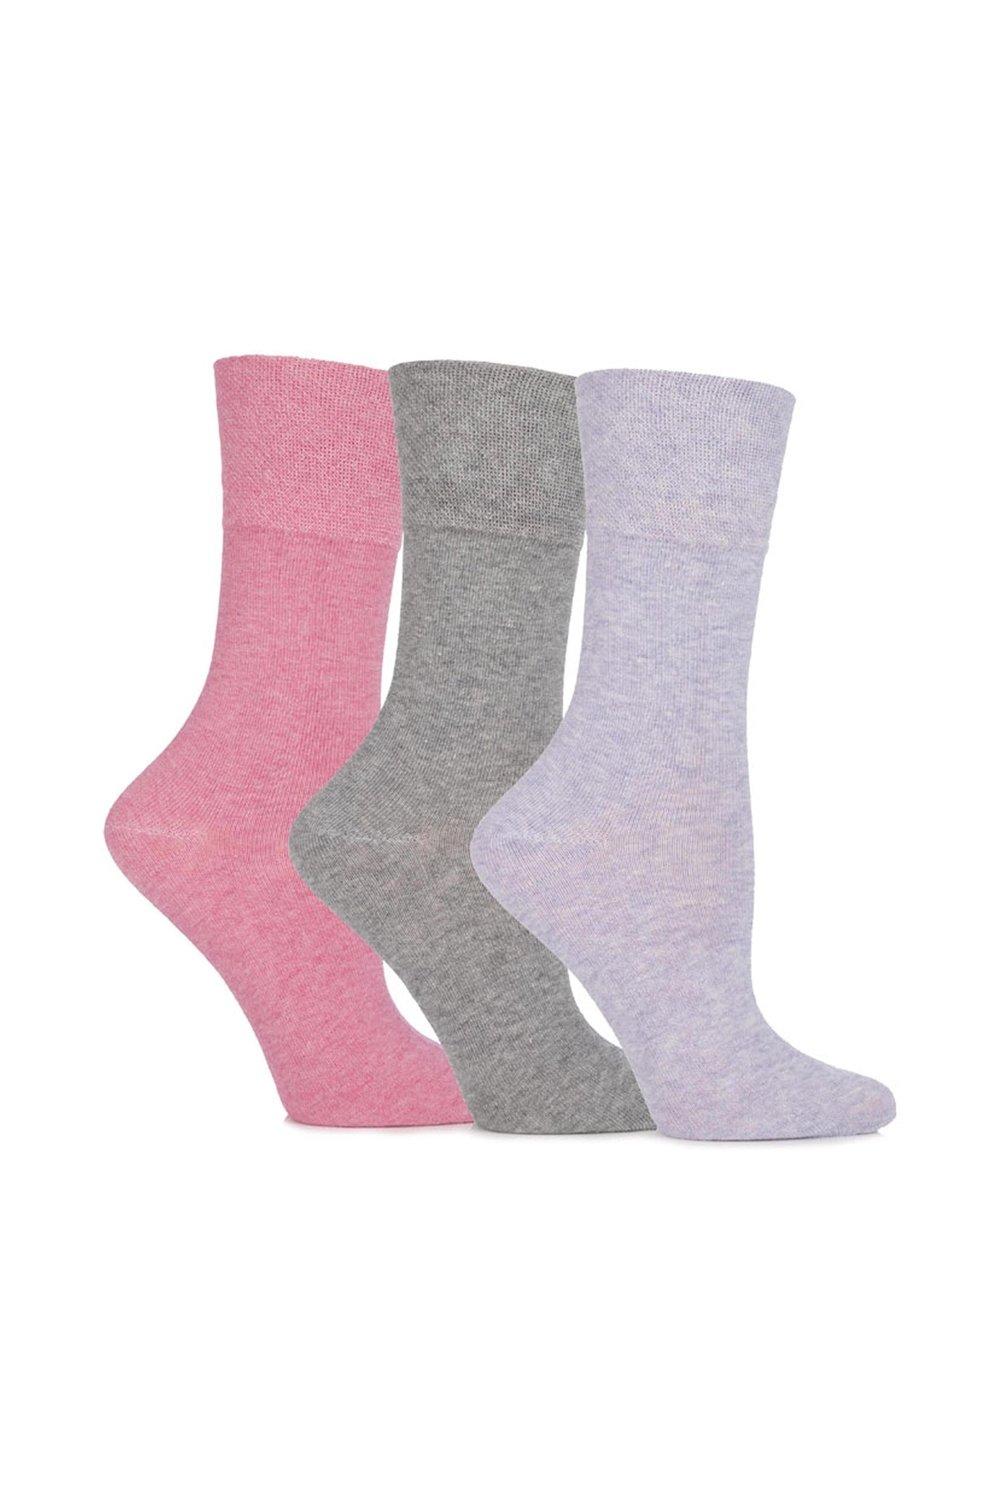 3 Pair Sammy Plain Cotton Socks